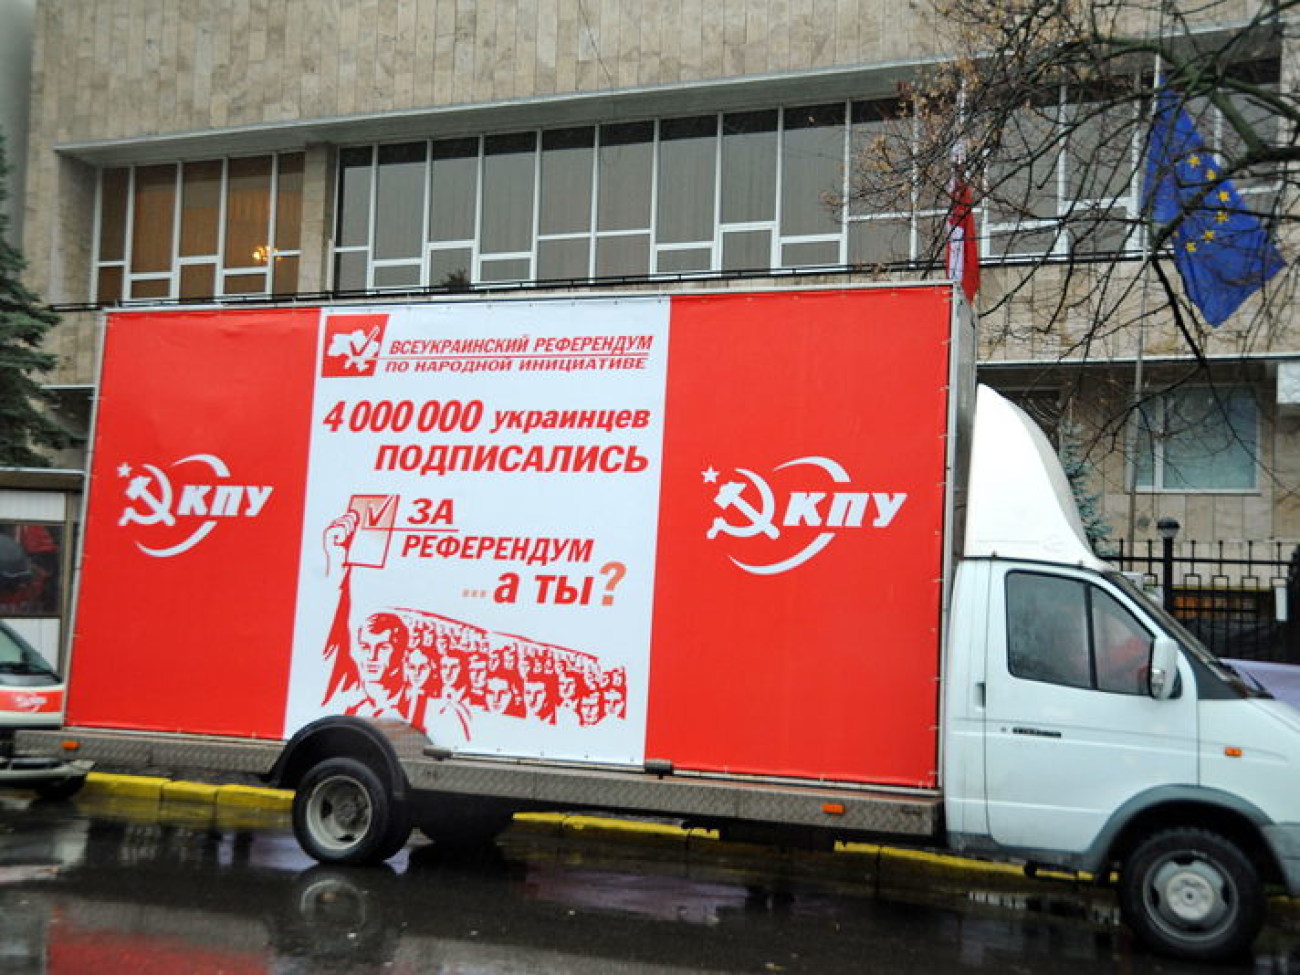 КПУ пикетировала посольство Польши, 25 ноября 2013г.